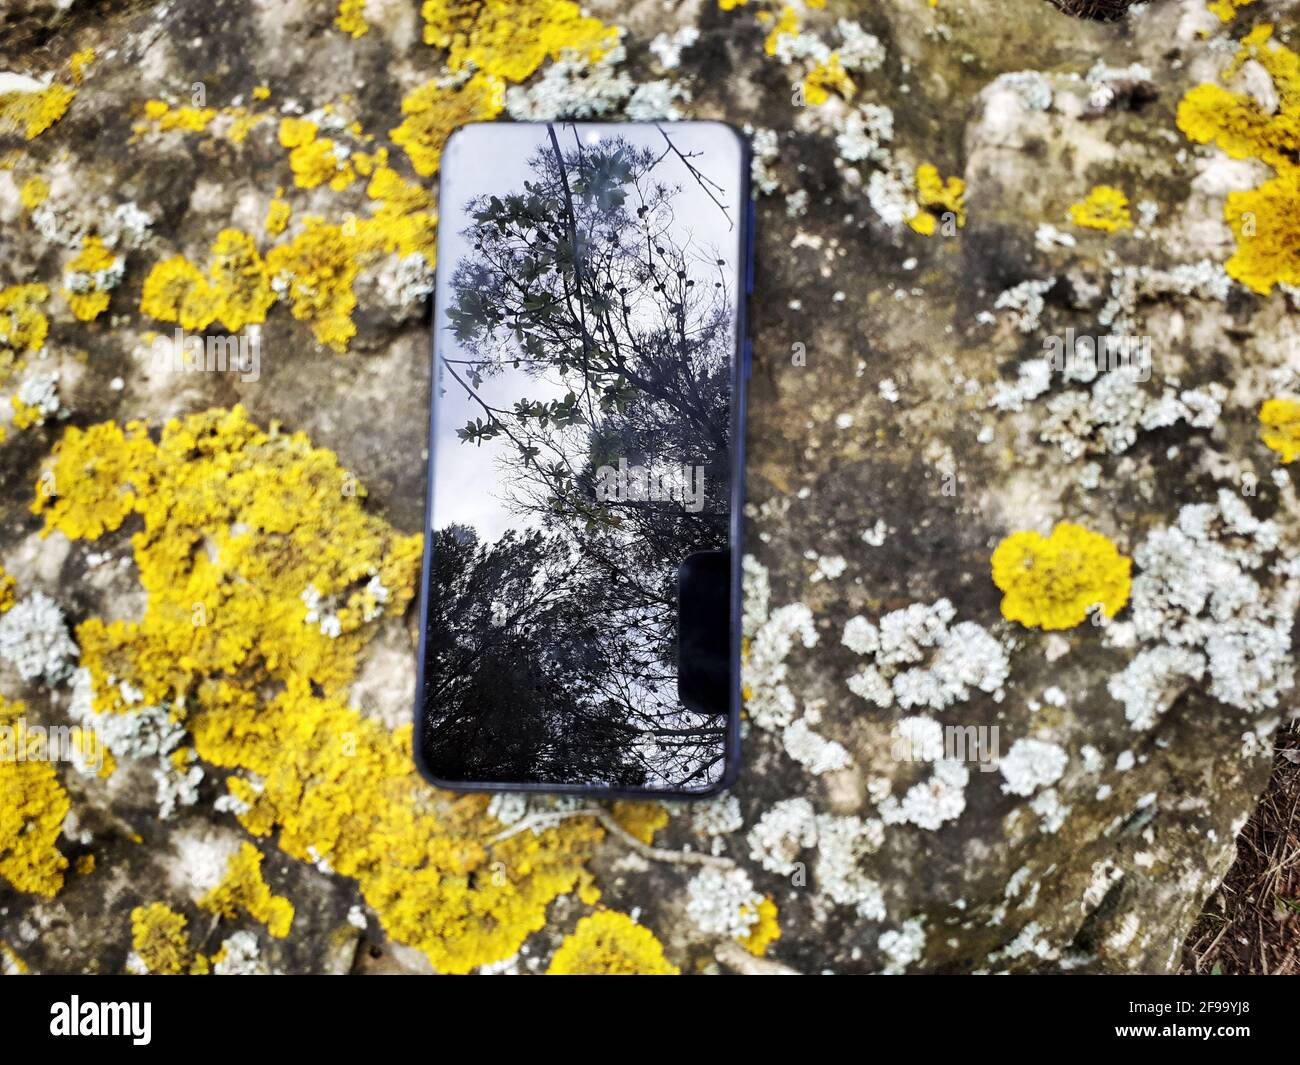 Réflexion d'arbres sur un smartphone. Banque D'Images